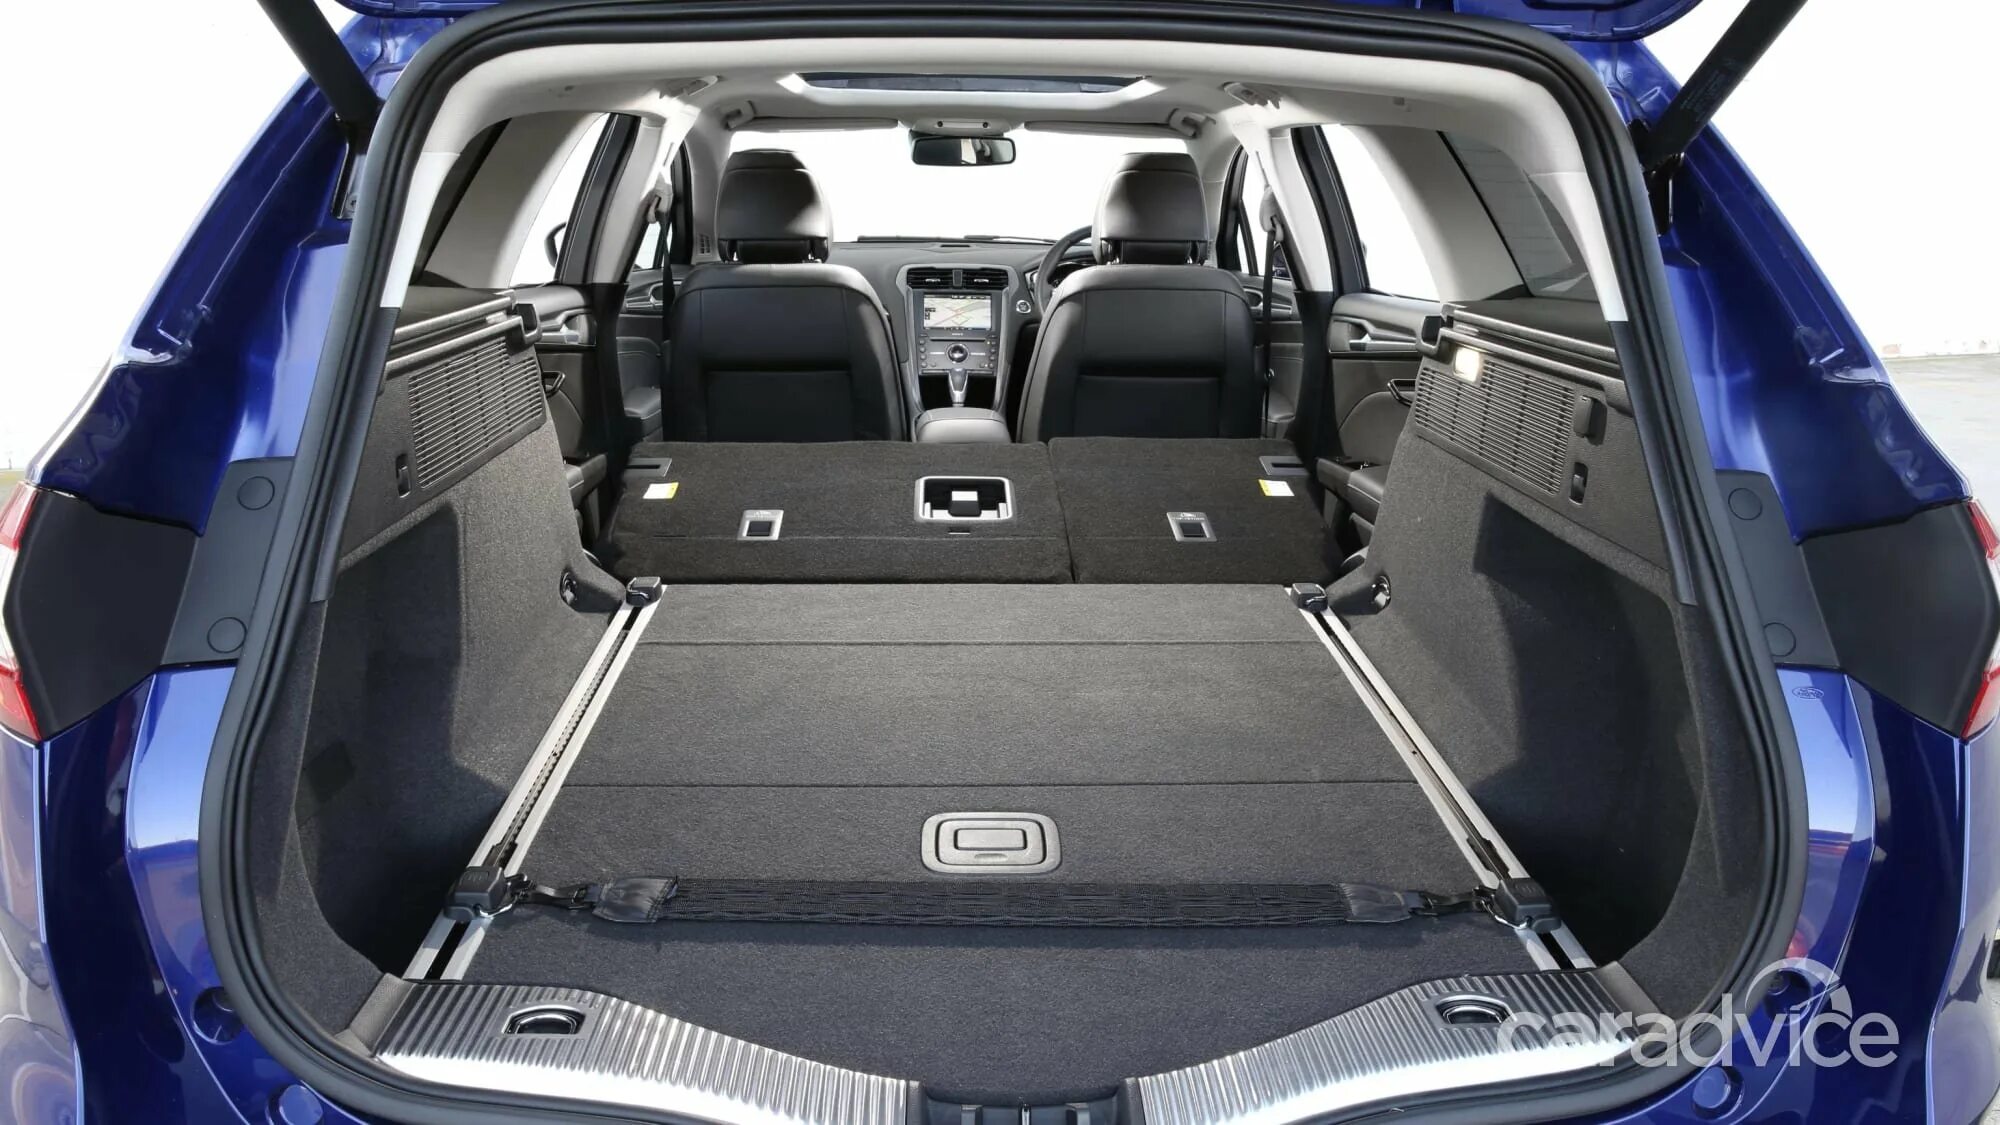 Багажник универсала длина. Ford Mondeo универсал багажник. Ford Mondeo 4 универсал багажник. Ford Mondeo 2015 салон. Форд Мондео 5 багажник.